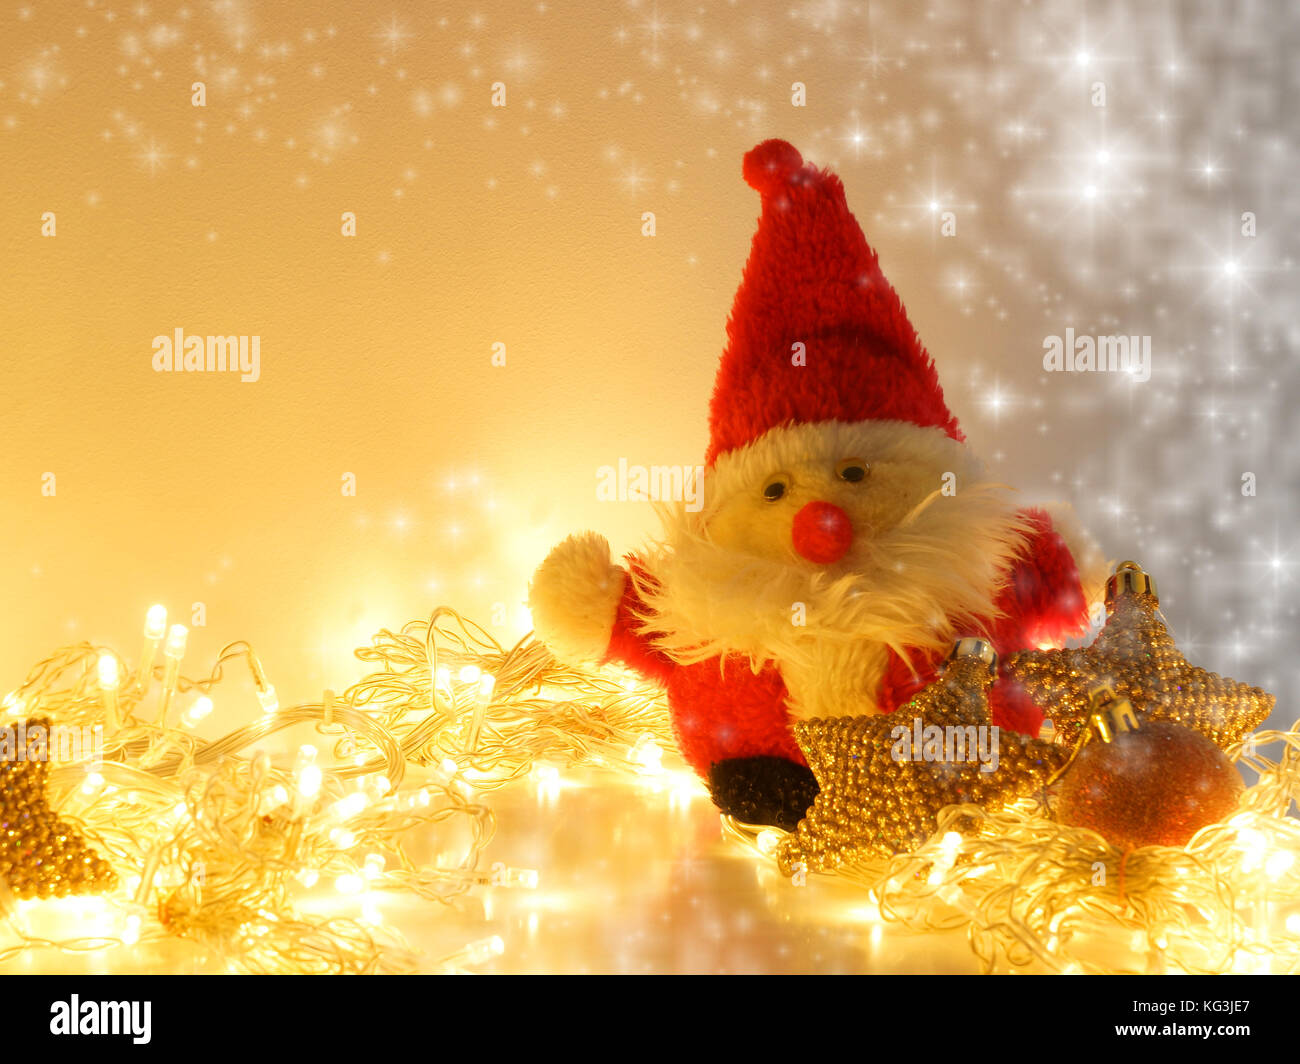 Juguetes de Santa Claus, decoraciones navideñas y festivas en Garland. Foto de stock